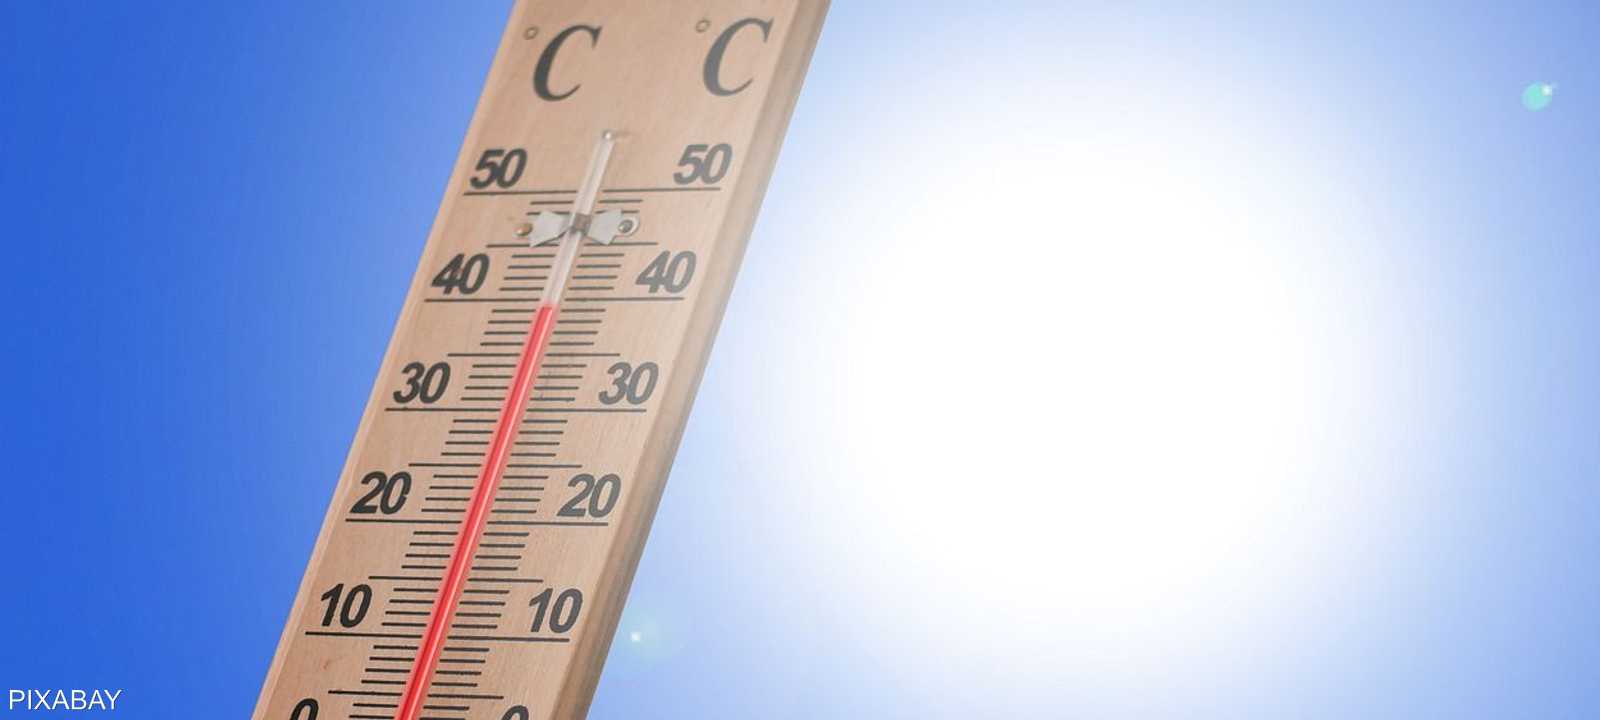 ارتفاع درجات الحرارة حول العالم يهدد البشرية